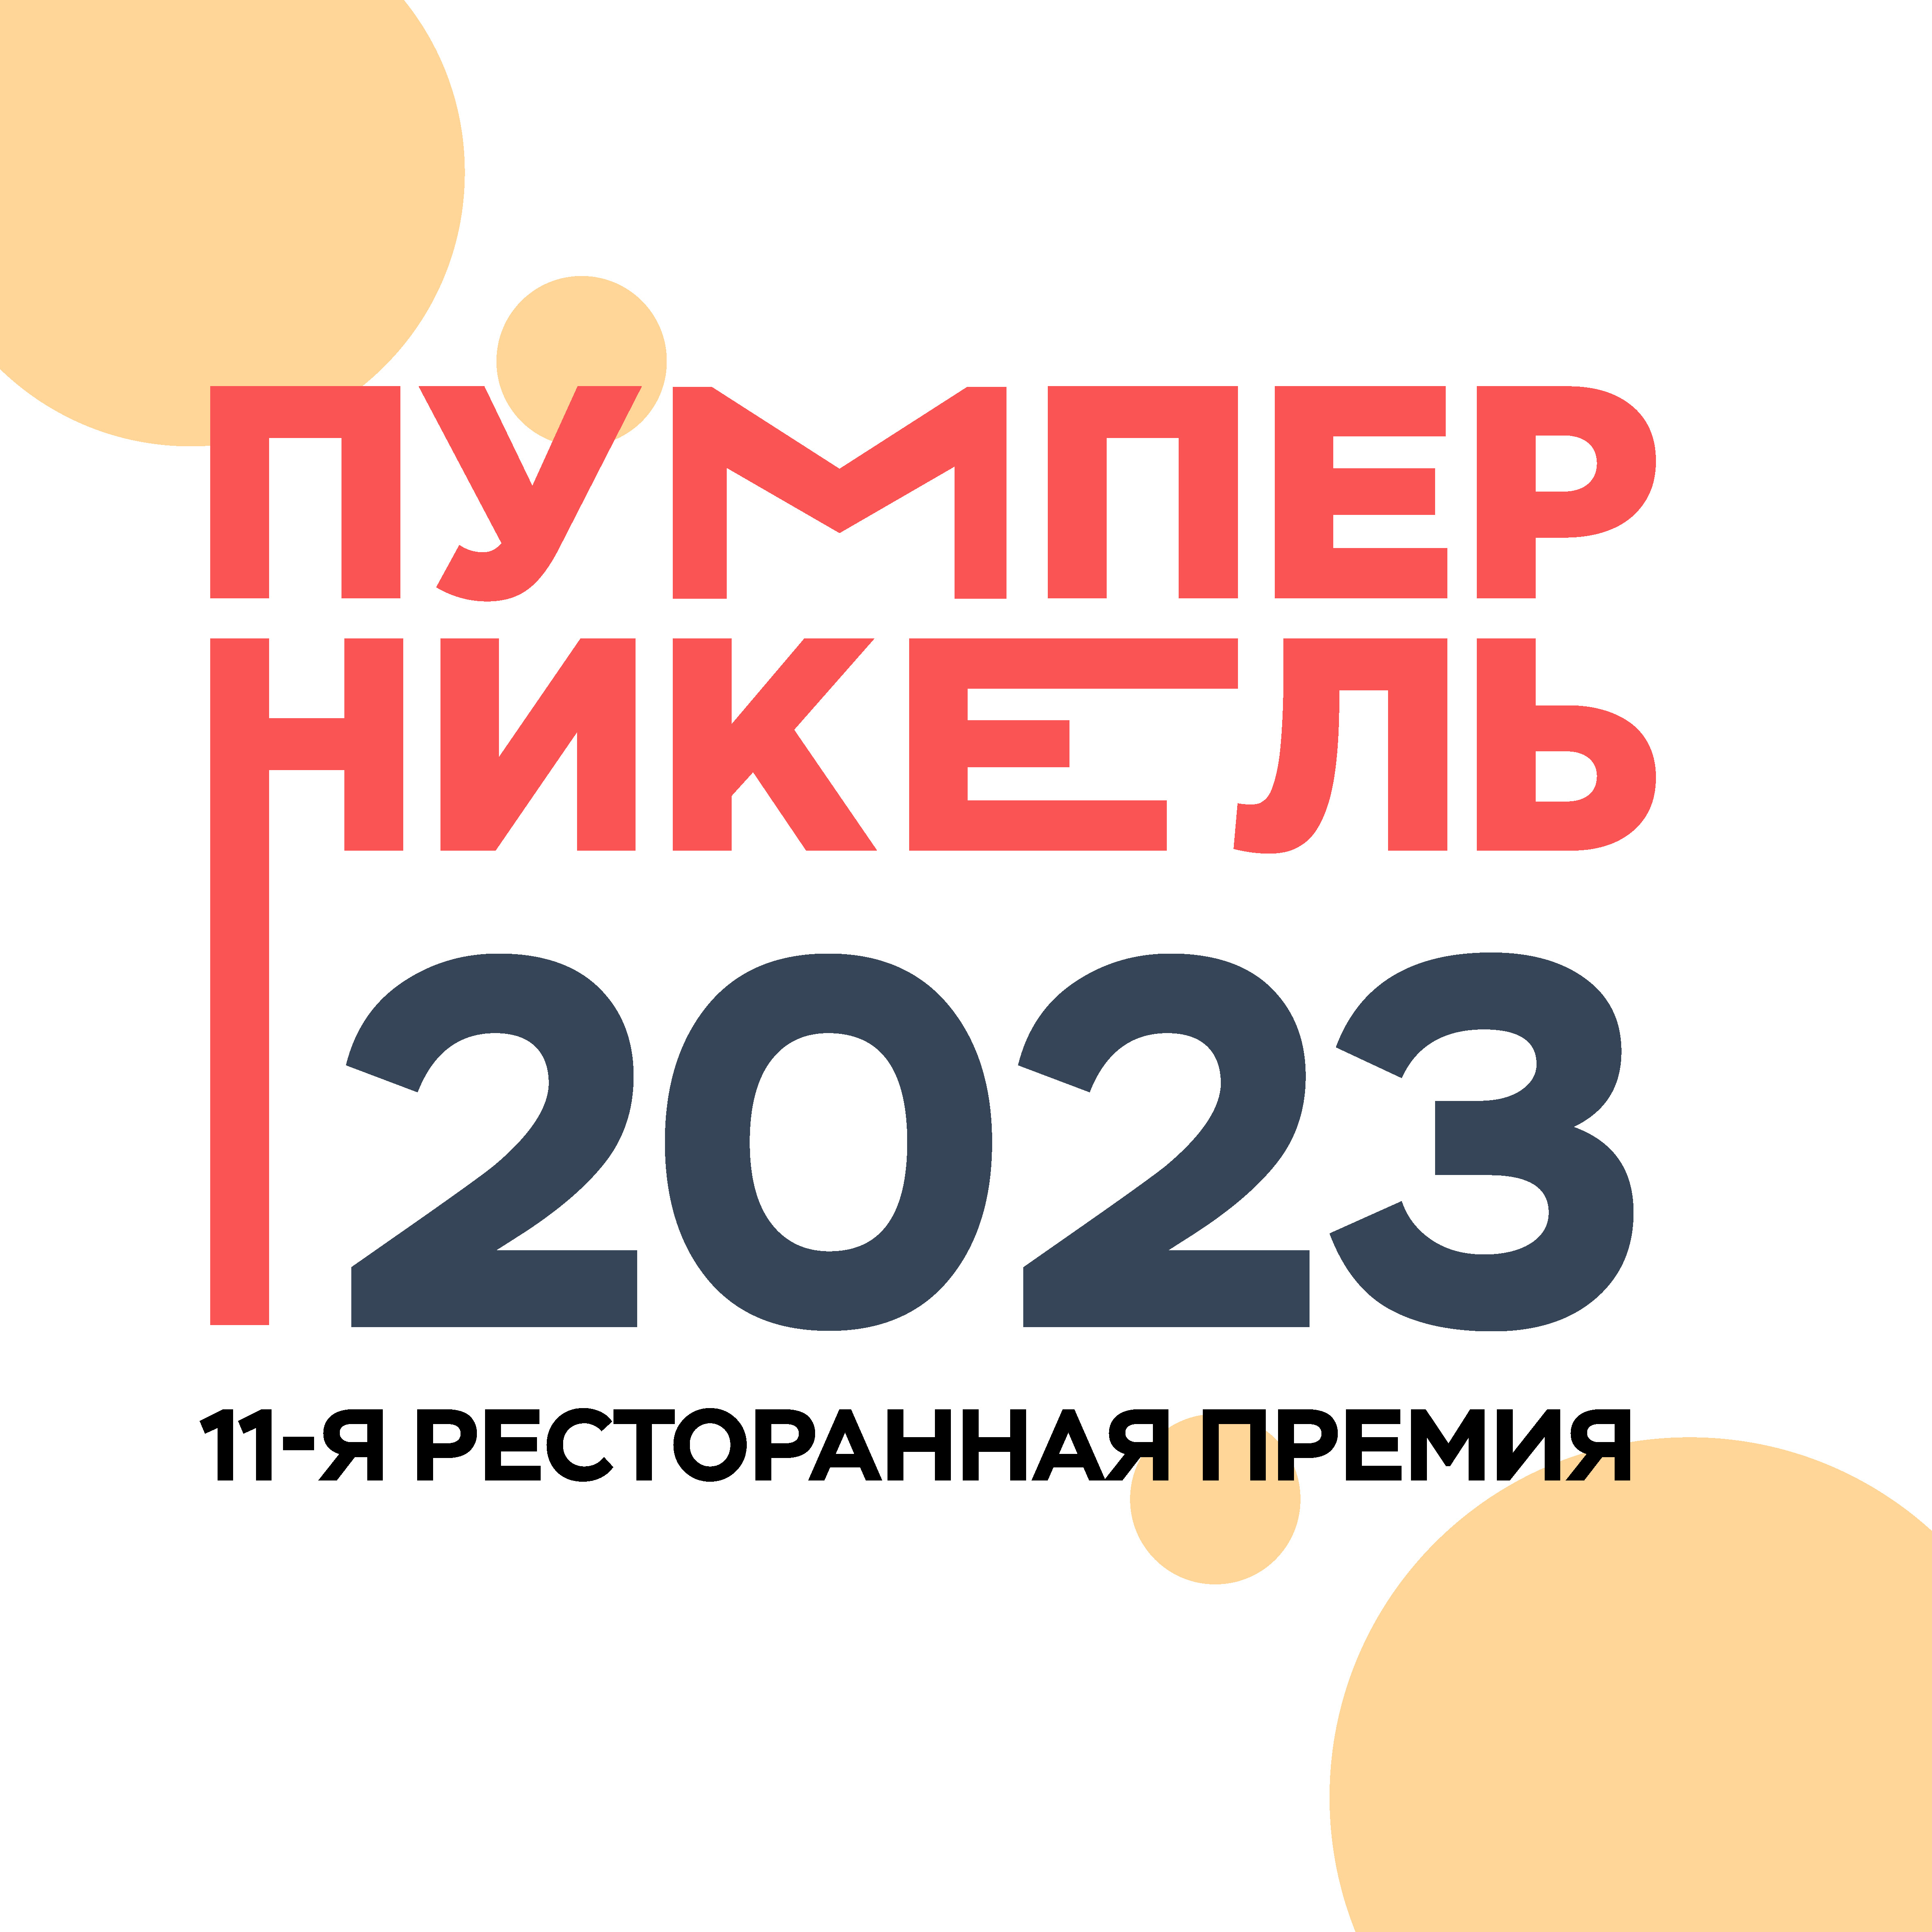 Пумперникель-2023